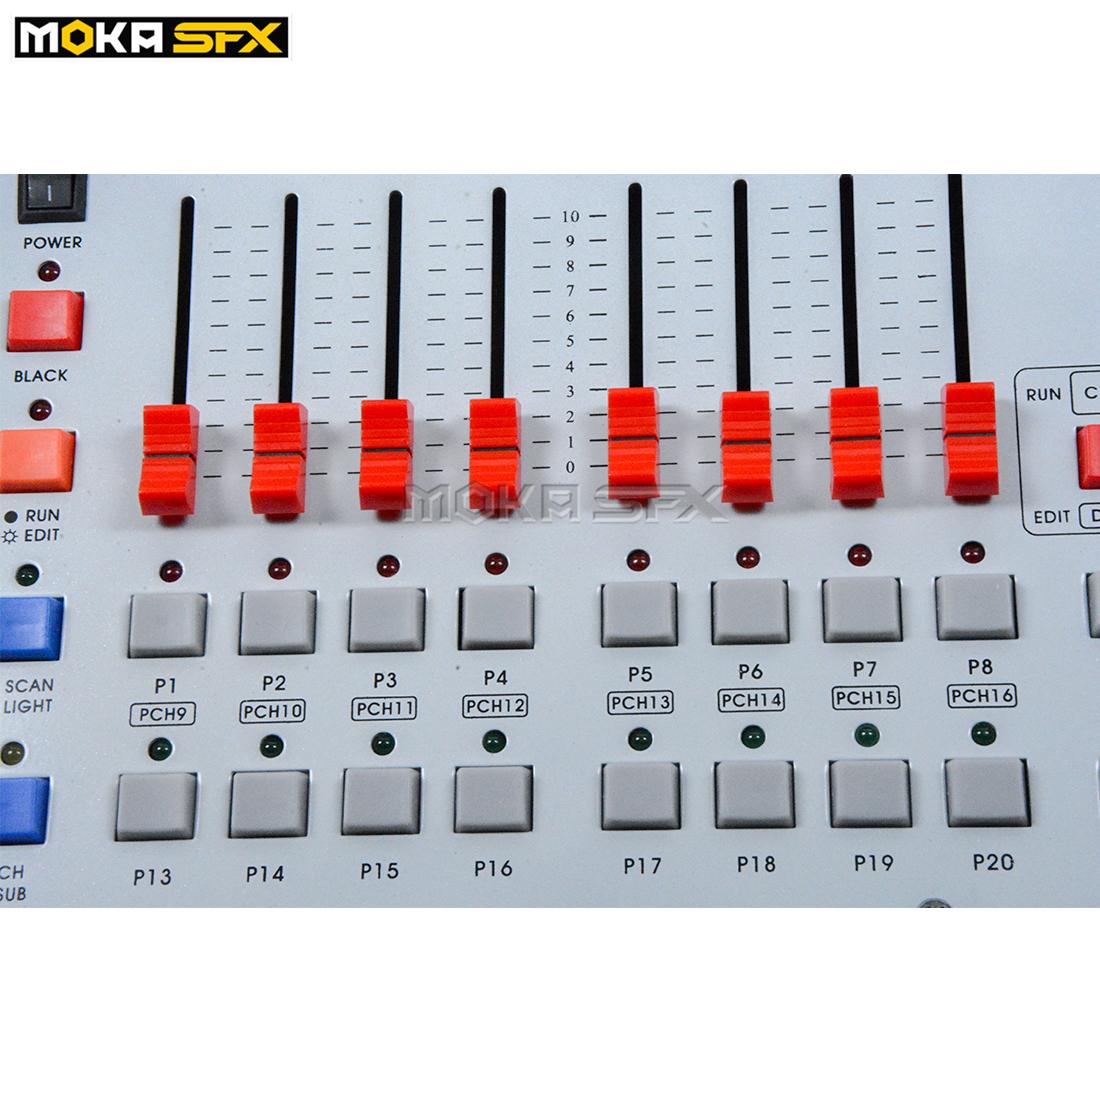 Изображение товара: Контроллер DJ MOKA, сценическое движущееся освещение на 240 каналов, консоль DMX, чувствительное сценическое освещение, контроллеры DMX для дискотеки и диджея